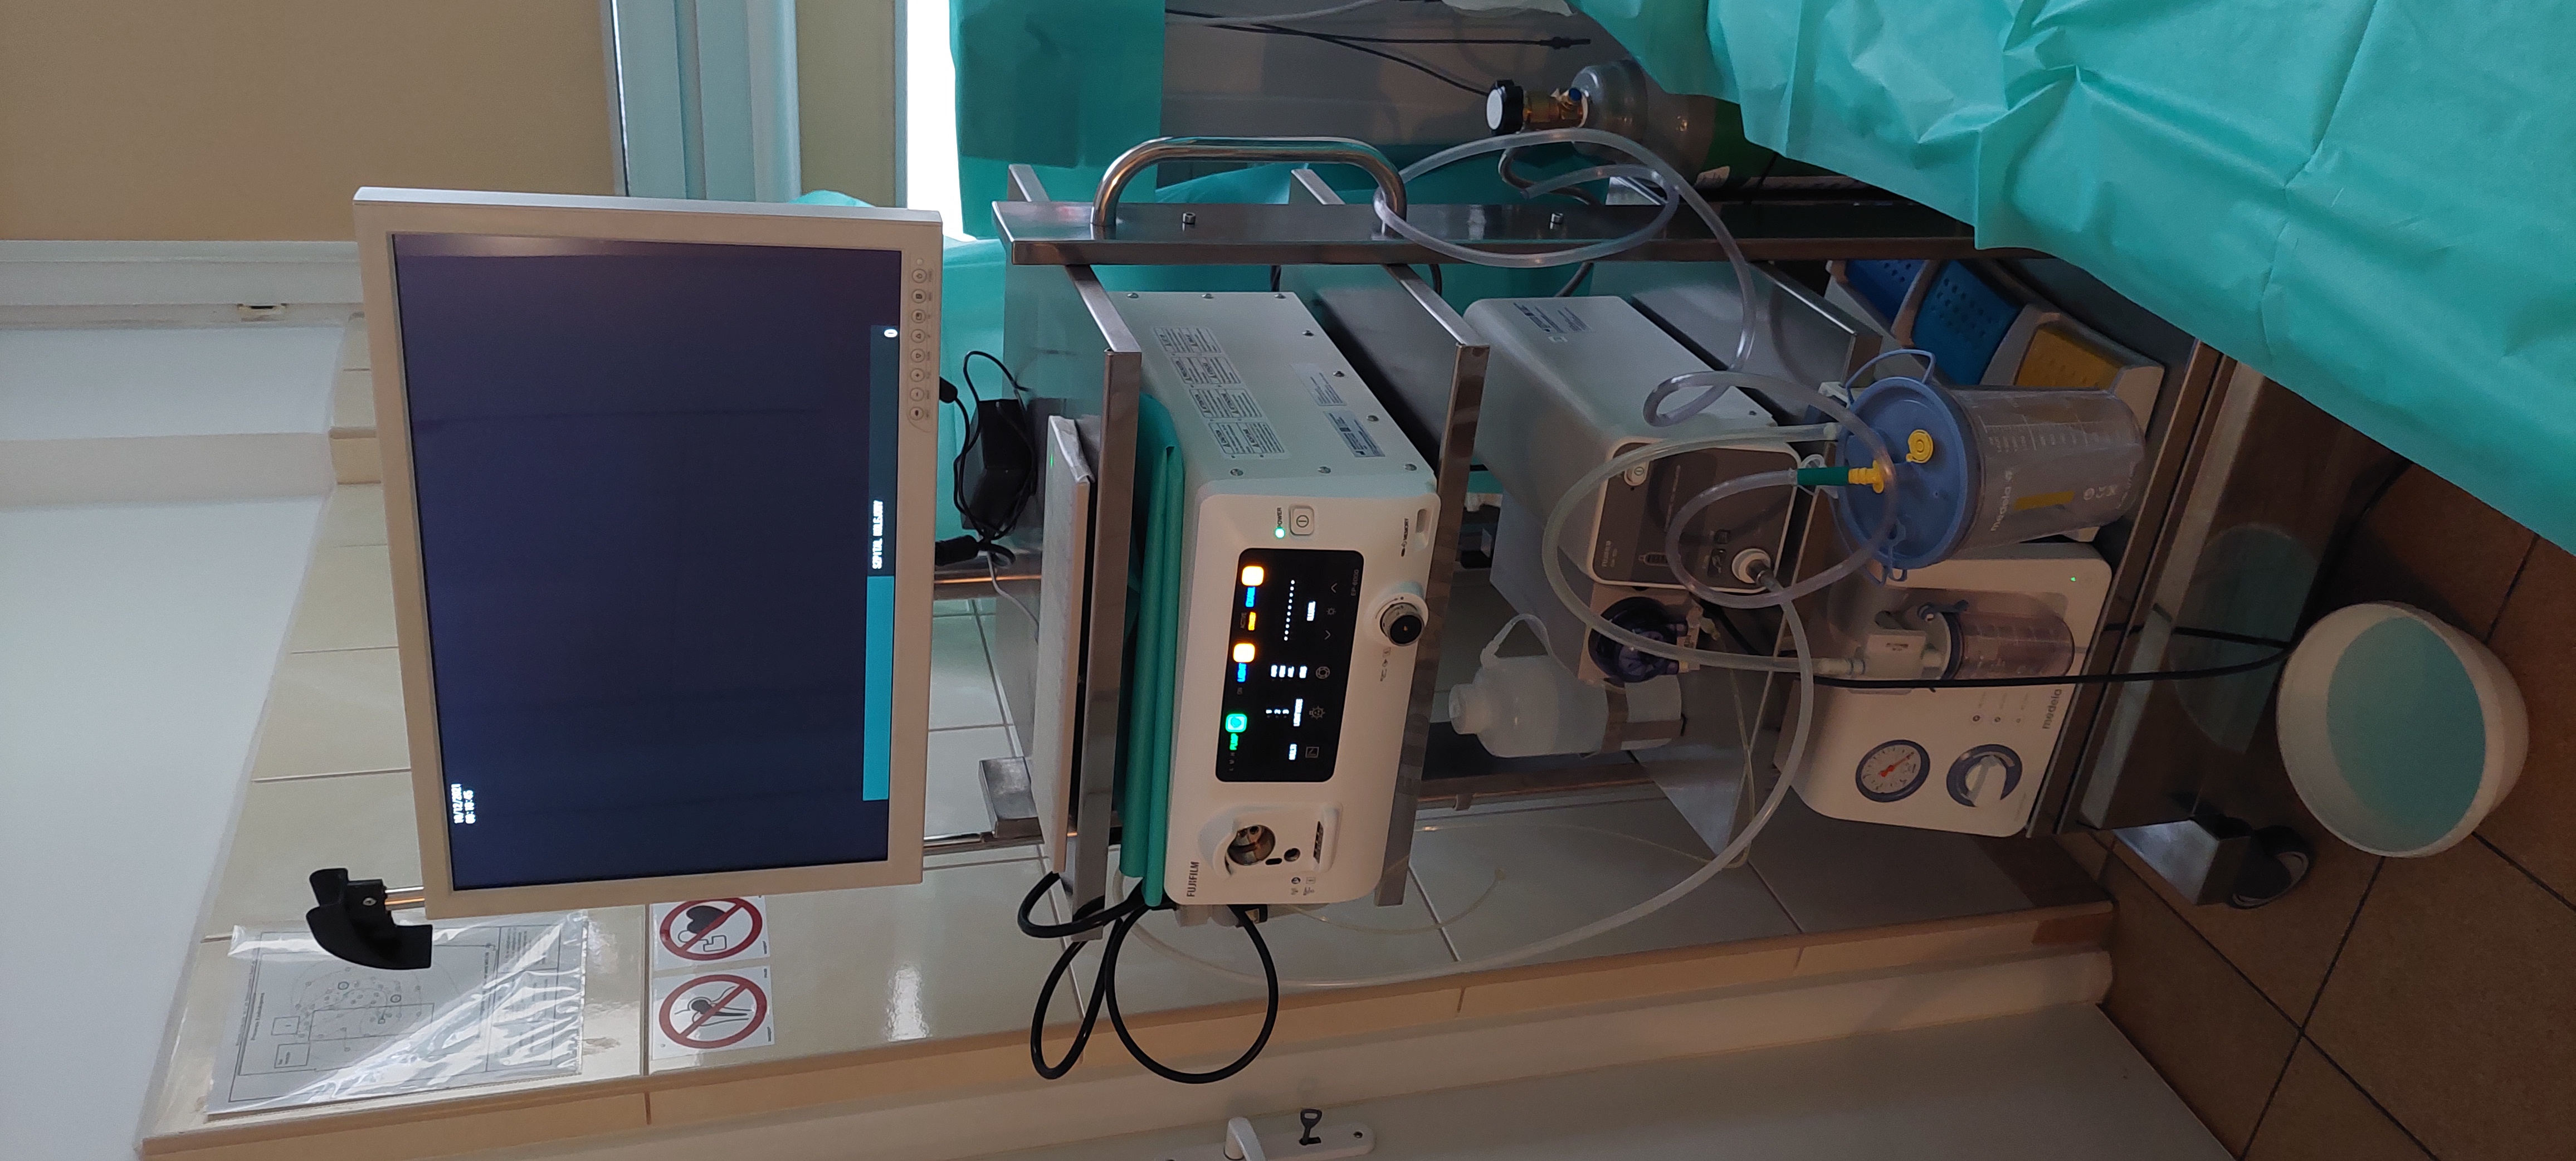 Sprzęt endoskopowy Zakup sprzętu i aparatury medycznej dla Szpitala Kolejowego w Pruszkowie